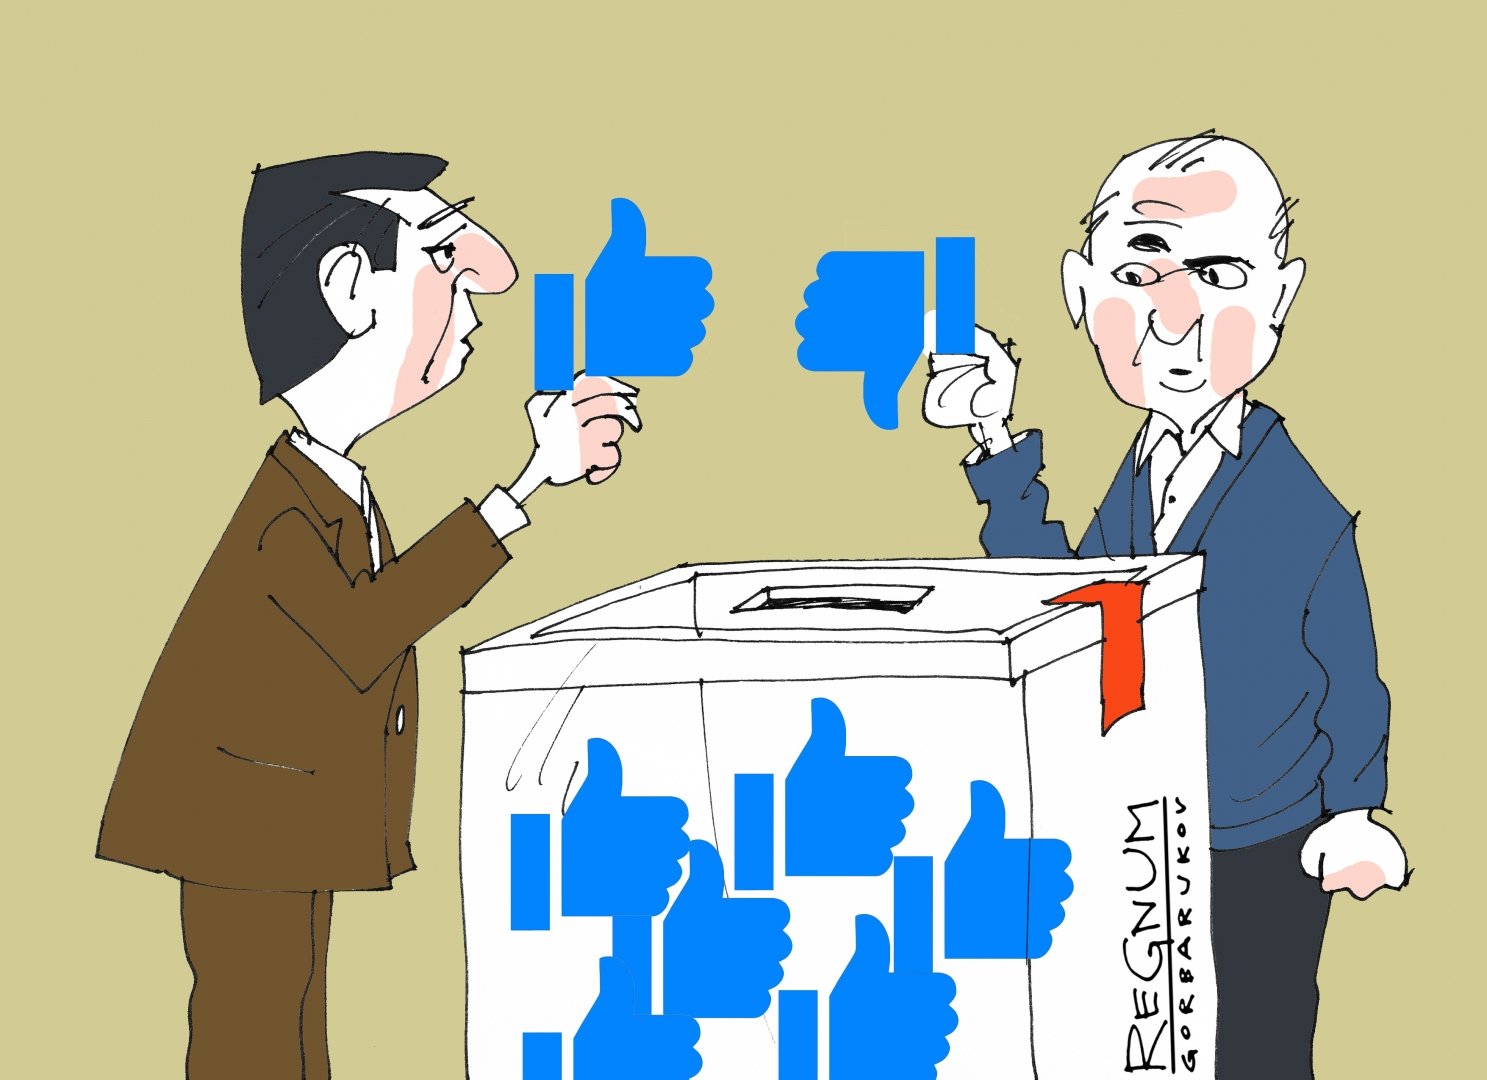 Выборы 1024. Политические выборы. Выборы иллюстрация. Выборы политические иллюстрации. Избирательная кампания.